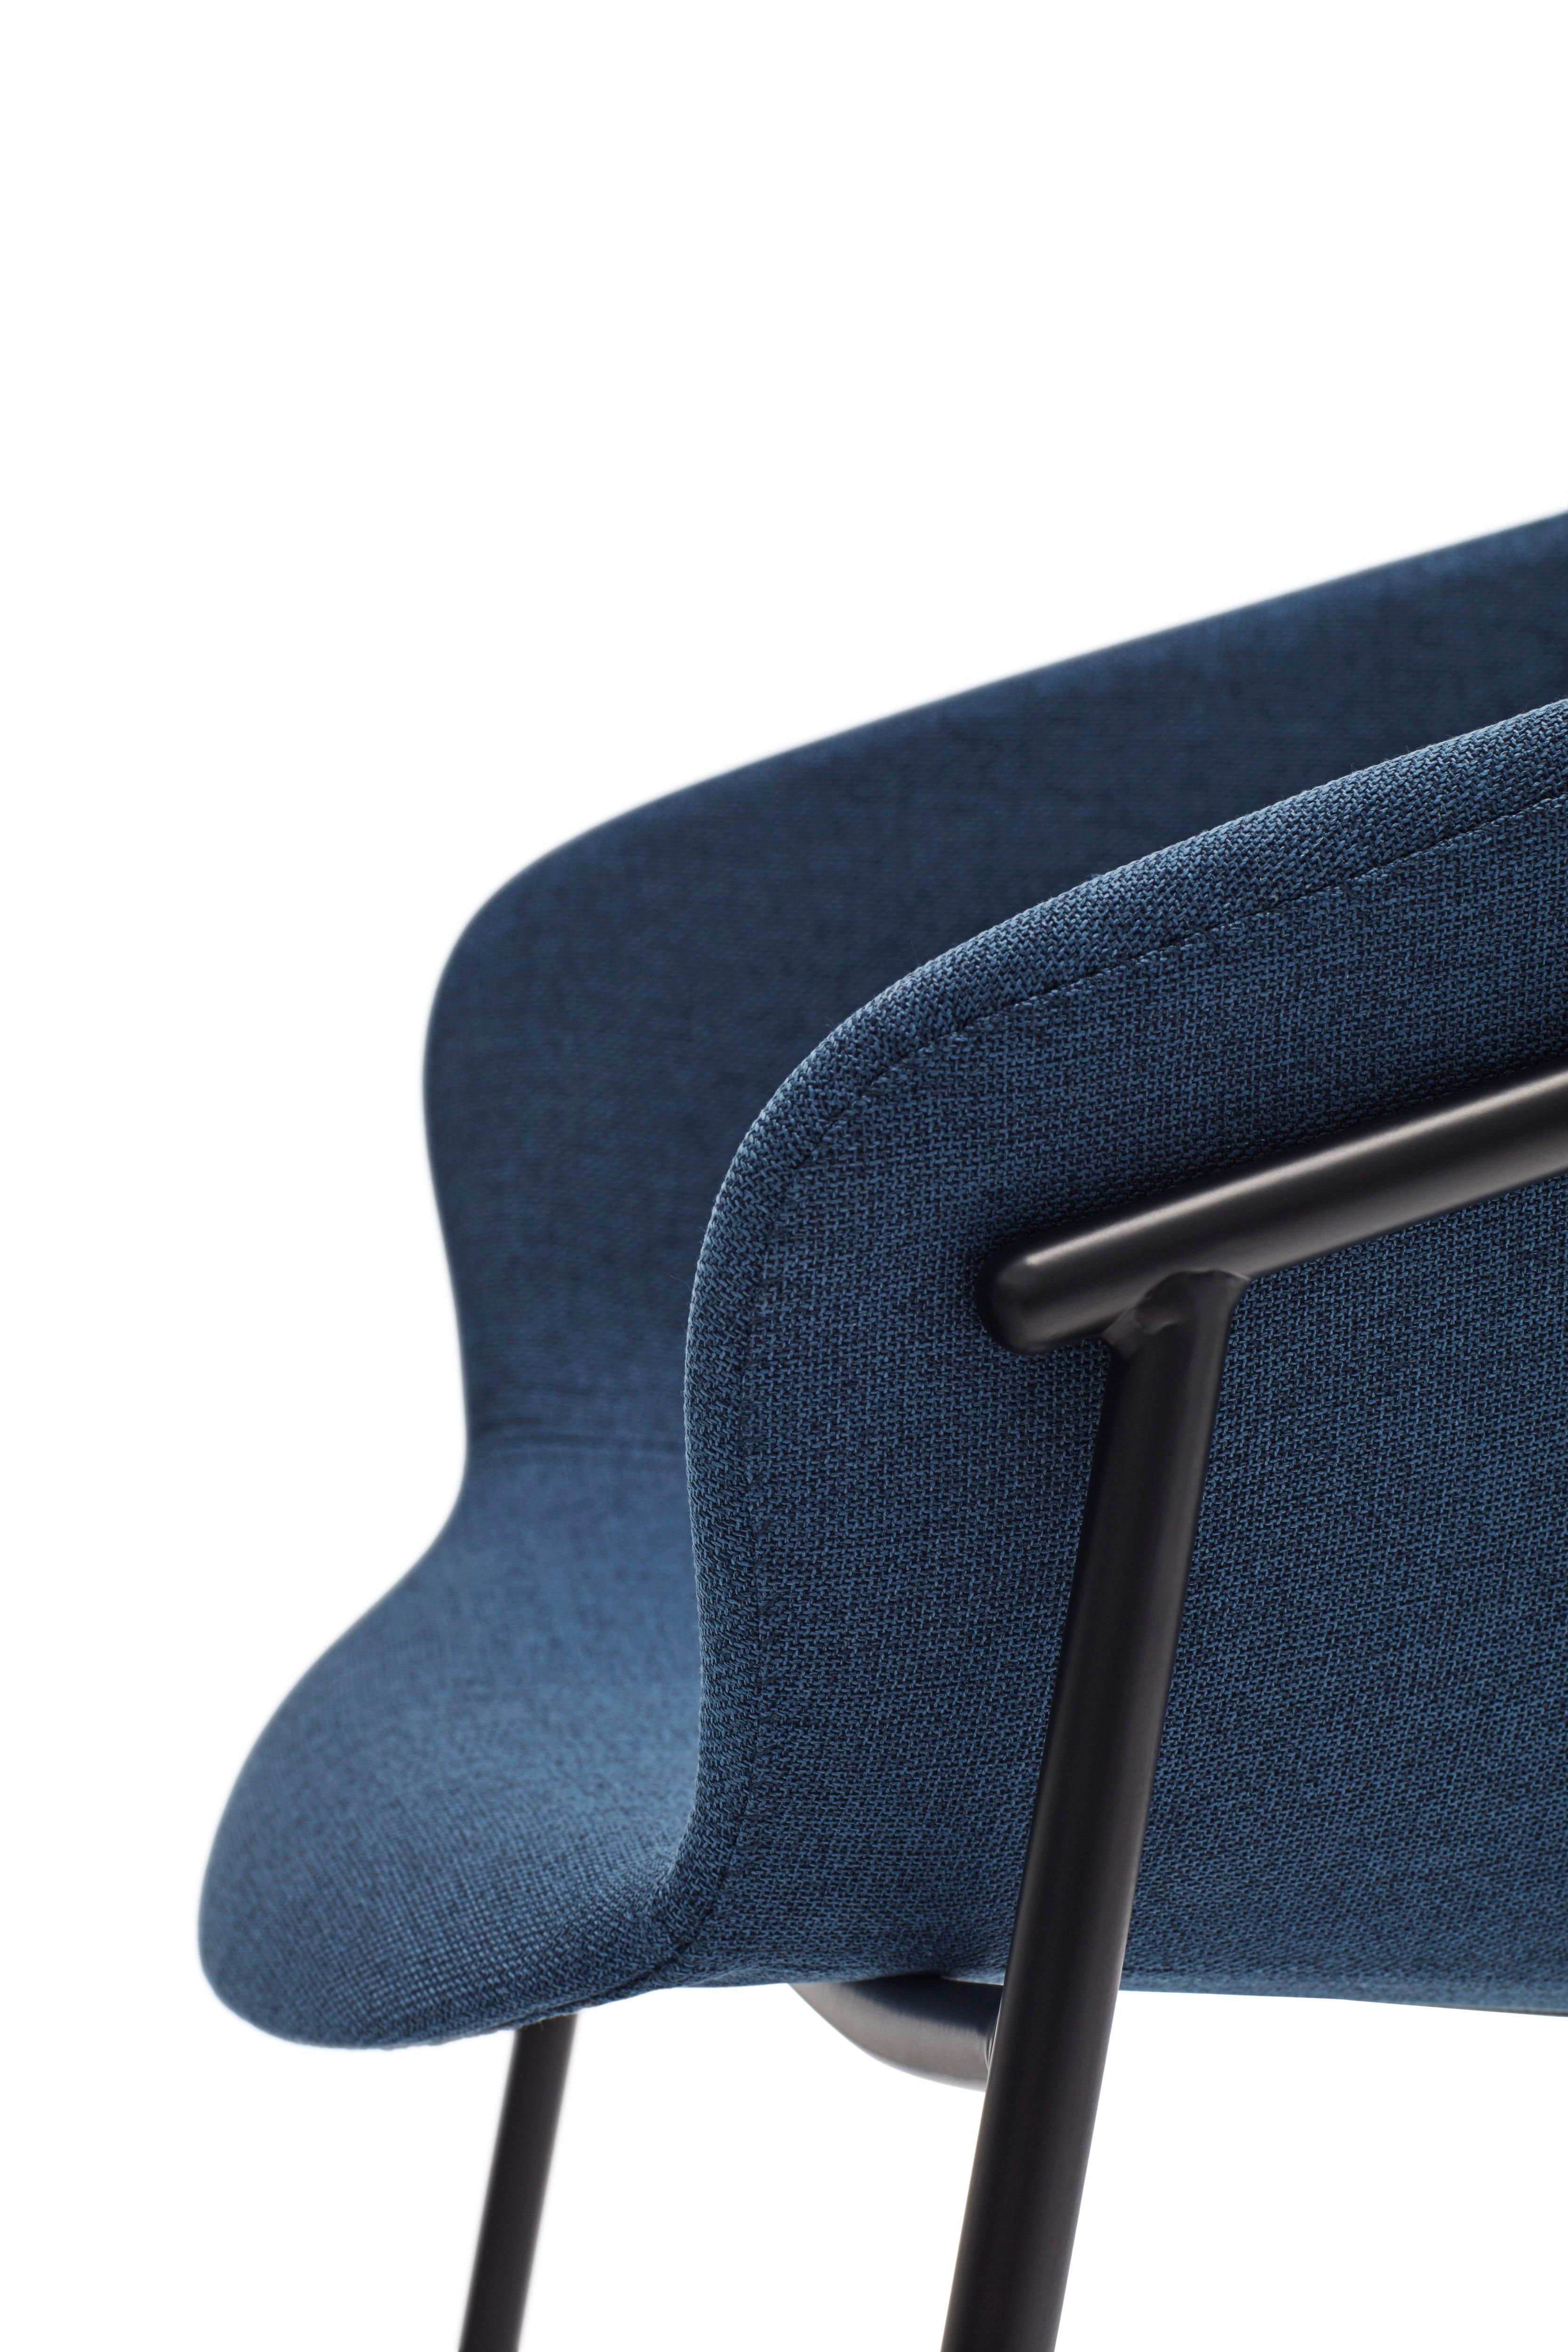 Krzesło HUG ciemnoniebieski, Teulat, Eye on Design